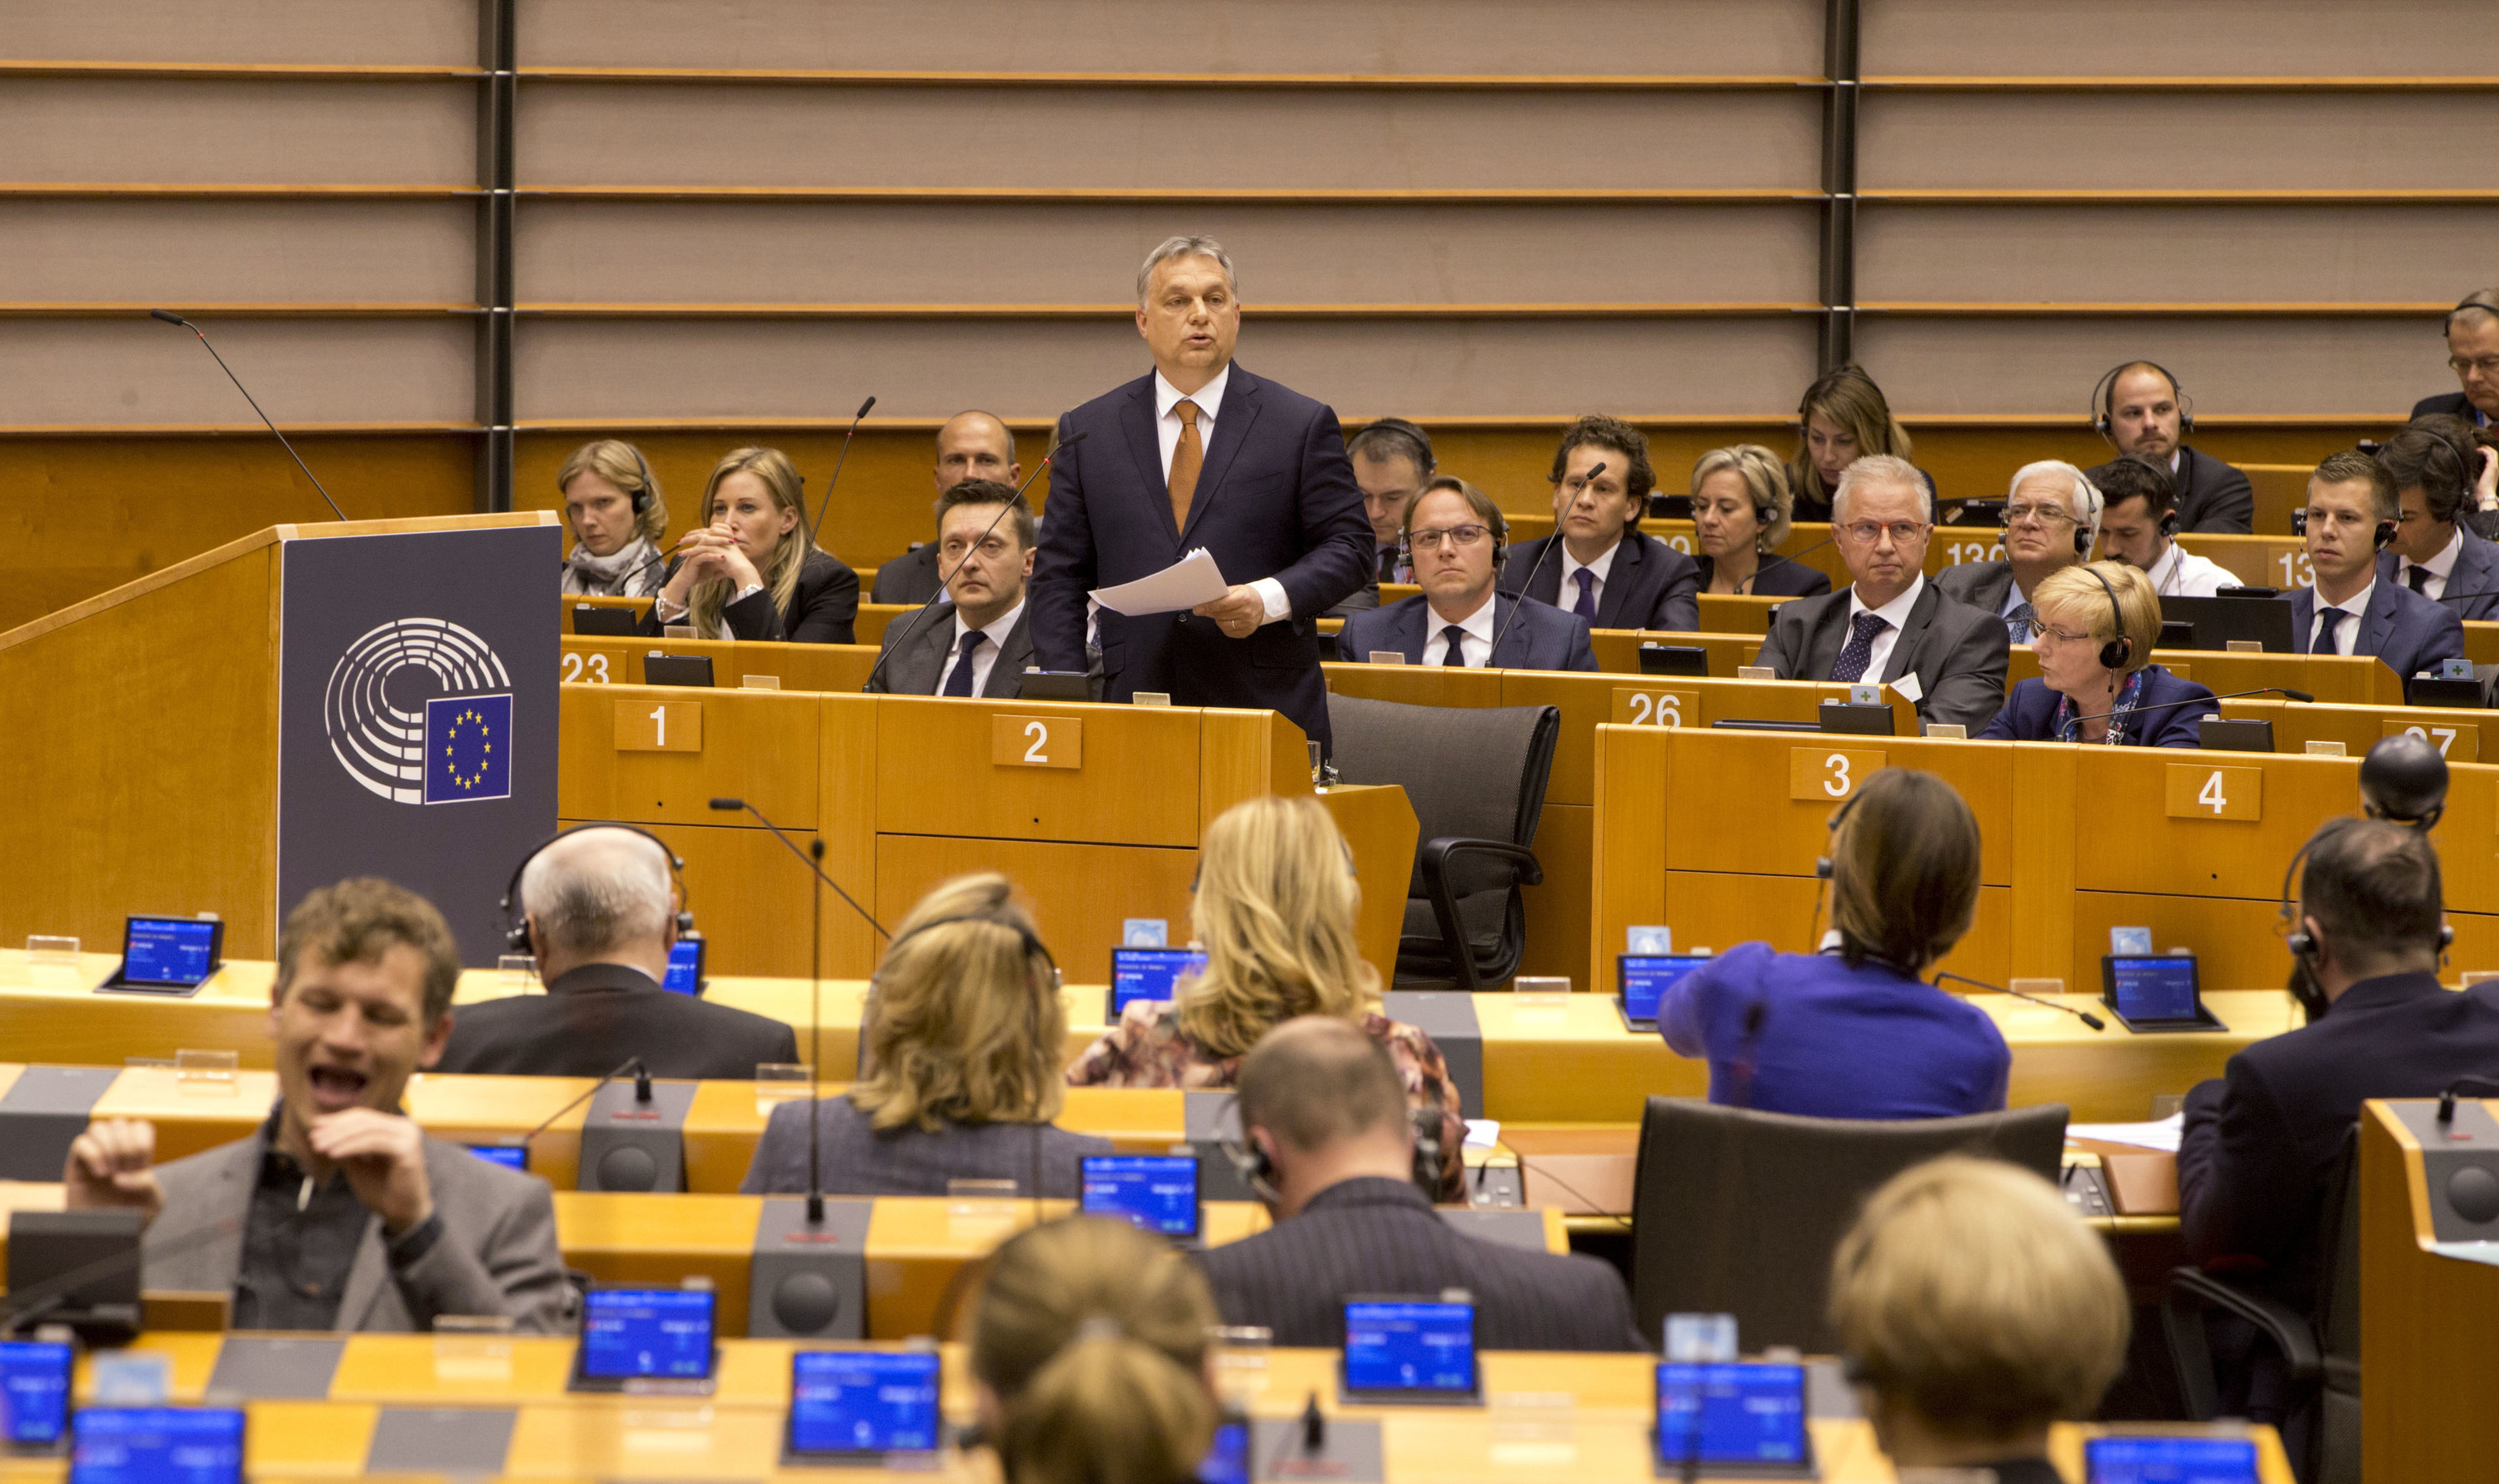 Ungarsn Ministerpräsident Viktor Orban vor dem Europaparlament | AP